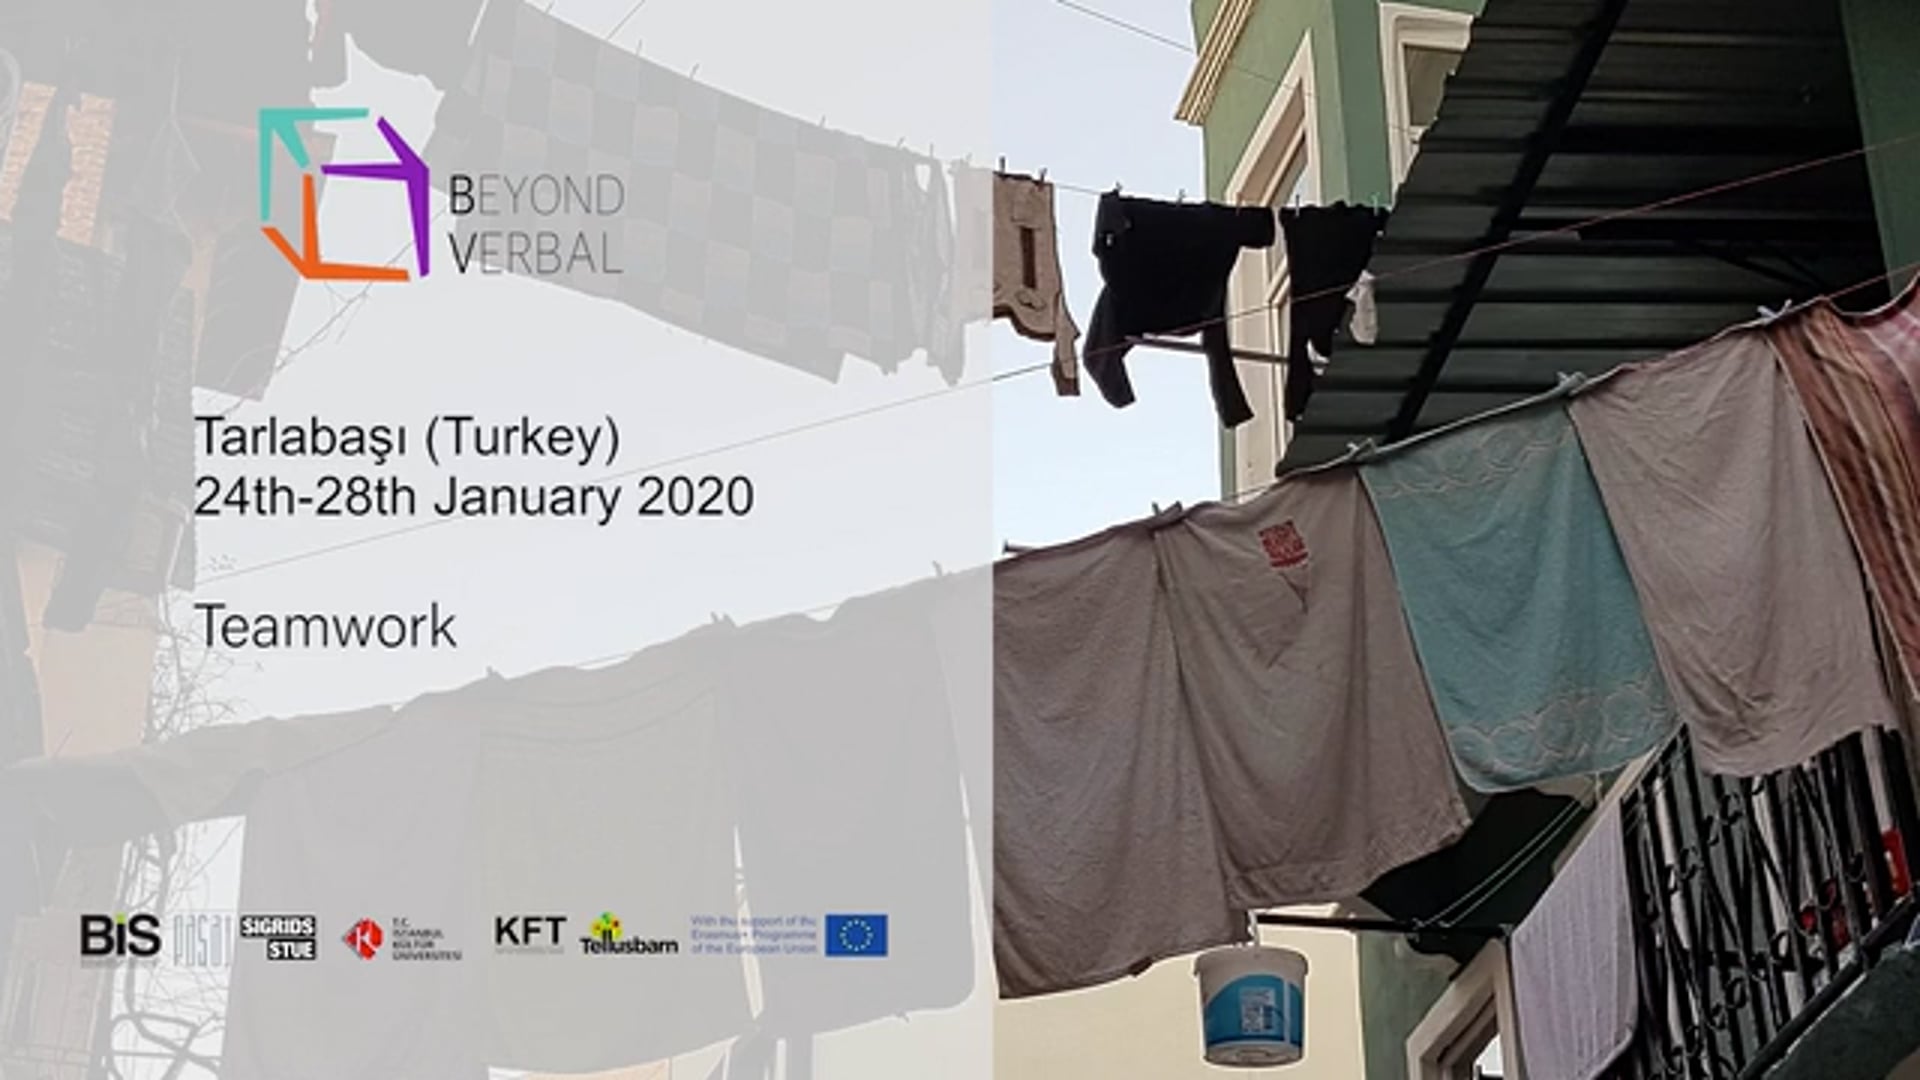 BV Teamwork Workshop (Tarlabaçi, January 2020)